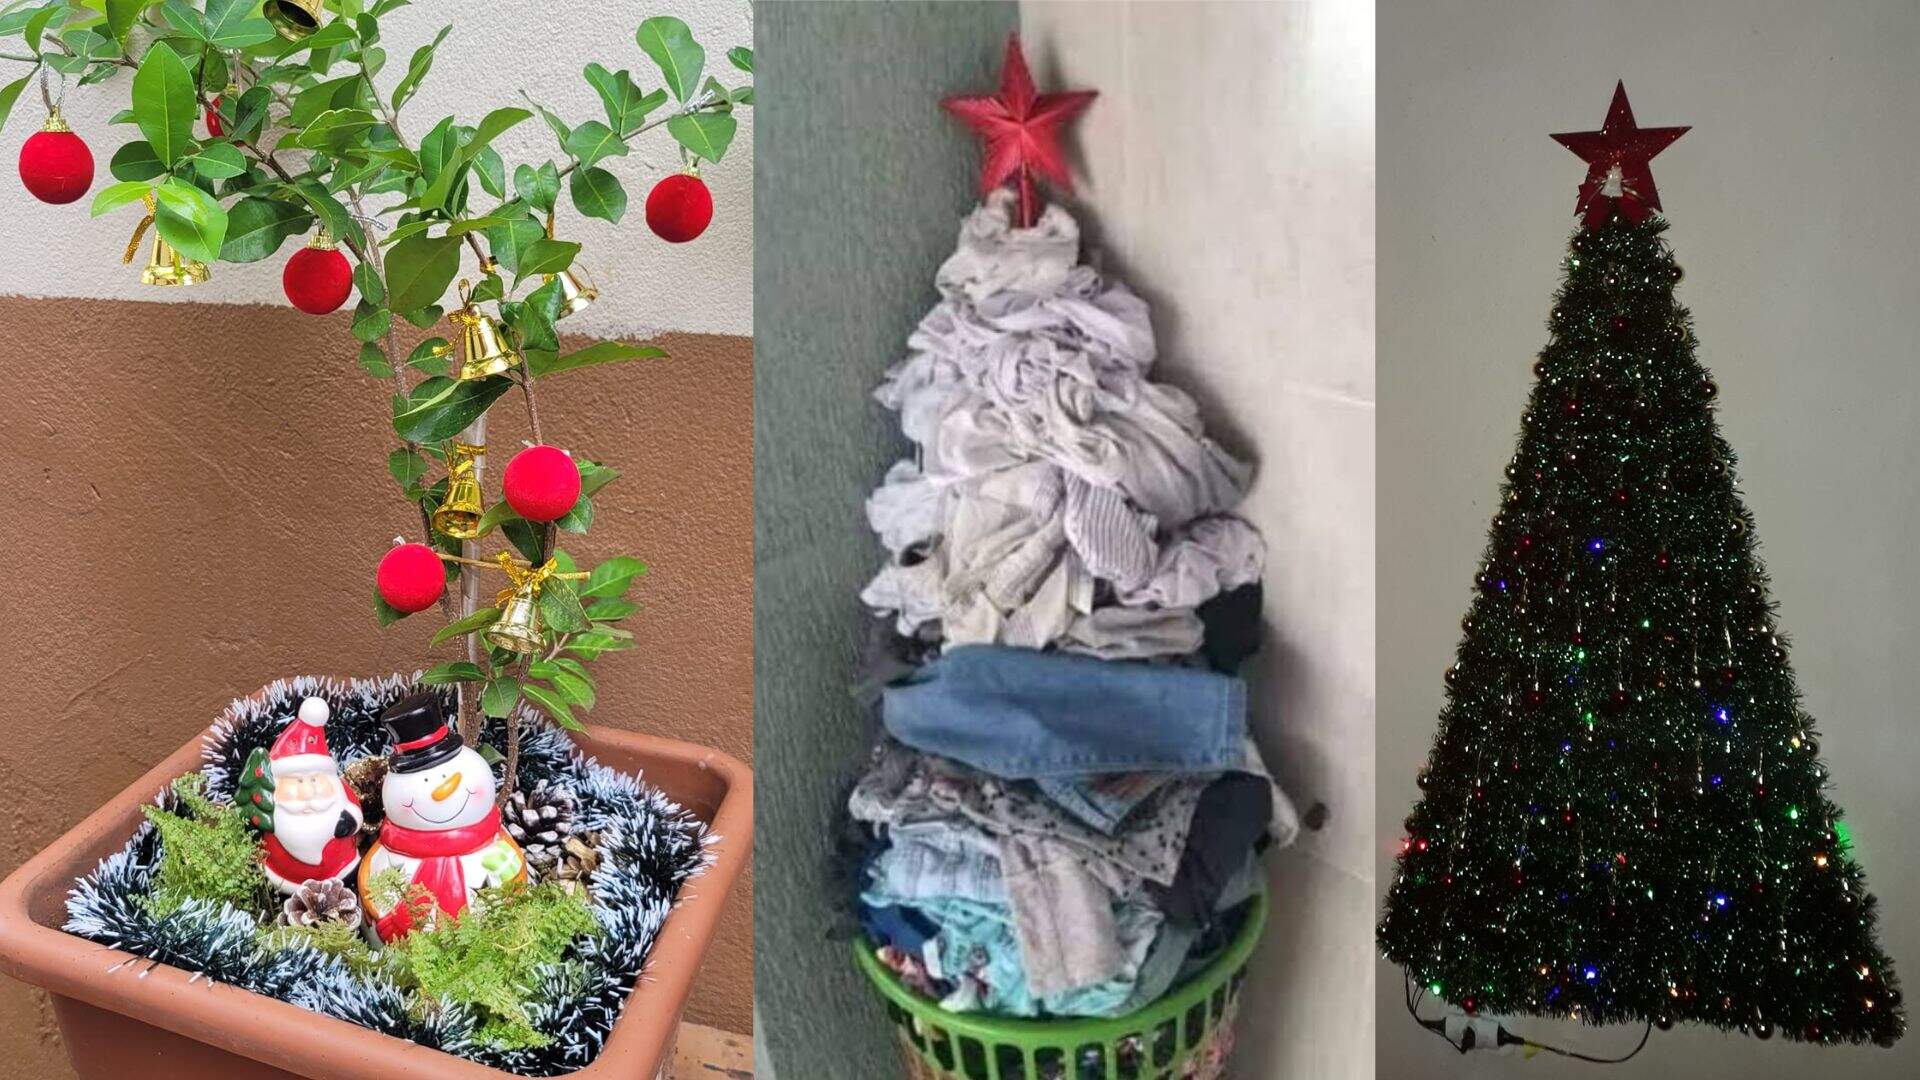 Pé de acerola e cabo de vassoura: em Campo Grande, tudo vira árvore de Natal